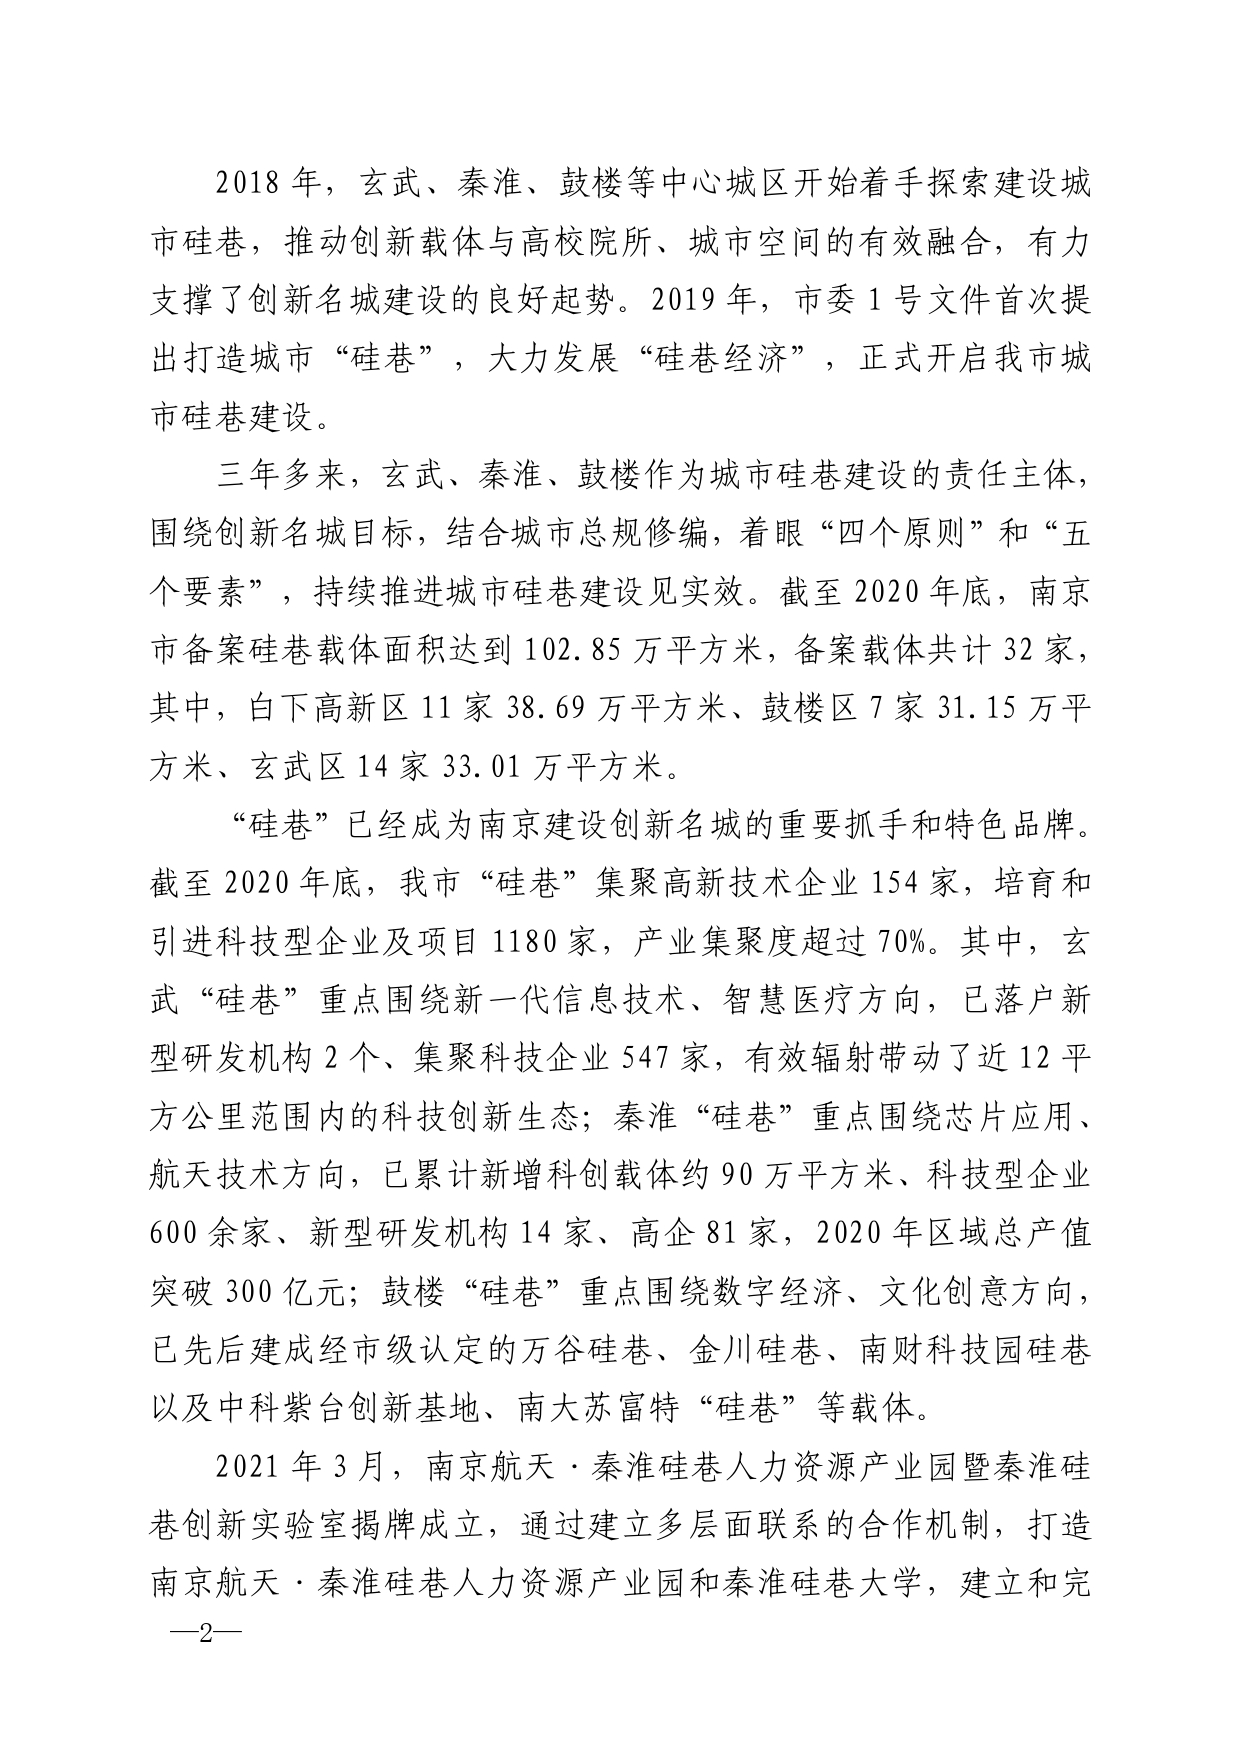 2021年第6期（关于南京城市硅巷发展的若干建议）-印刷版_page-0002.jpg